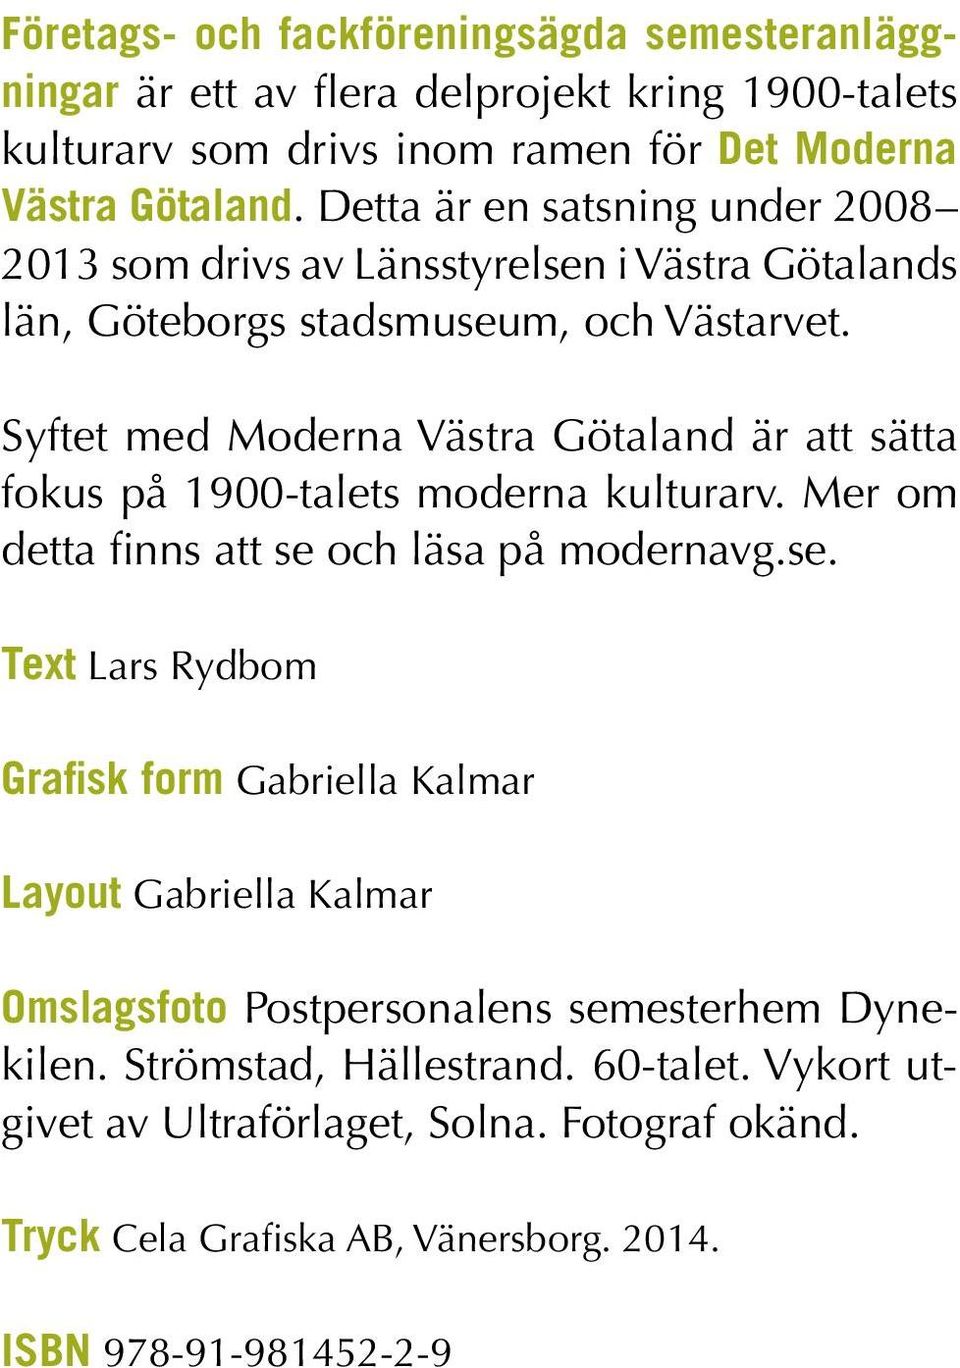 Syftet med Moderna Västra Götaland är att sätta fokus på 1900-talets moderna kulturarv. Mer om detta finns att se 